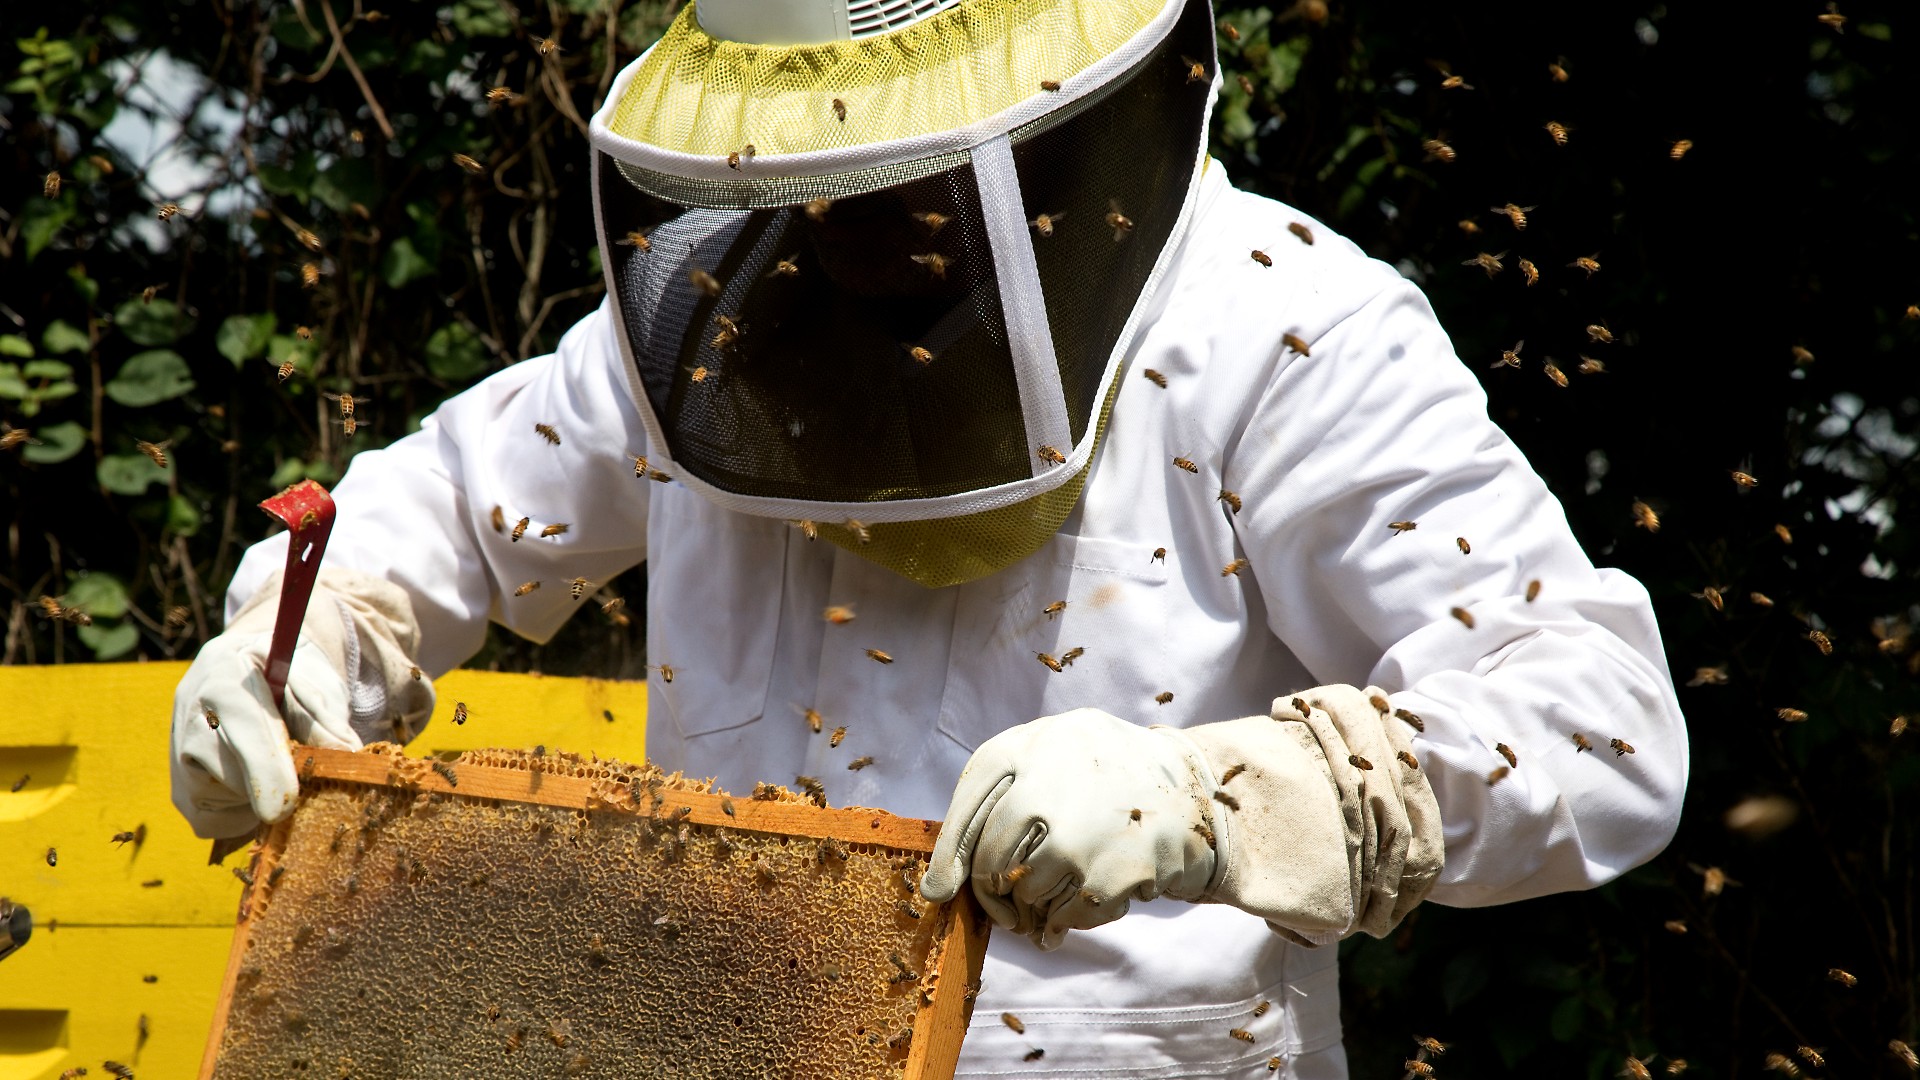 Hier sehen wir einen Imker, der einen schützenden weißen Bienenanzug trägt.  Sie halten eine Wabe vor sich, während sie von einem Bienenschwarm umgeben sind.